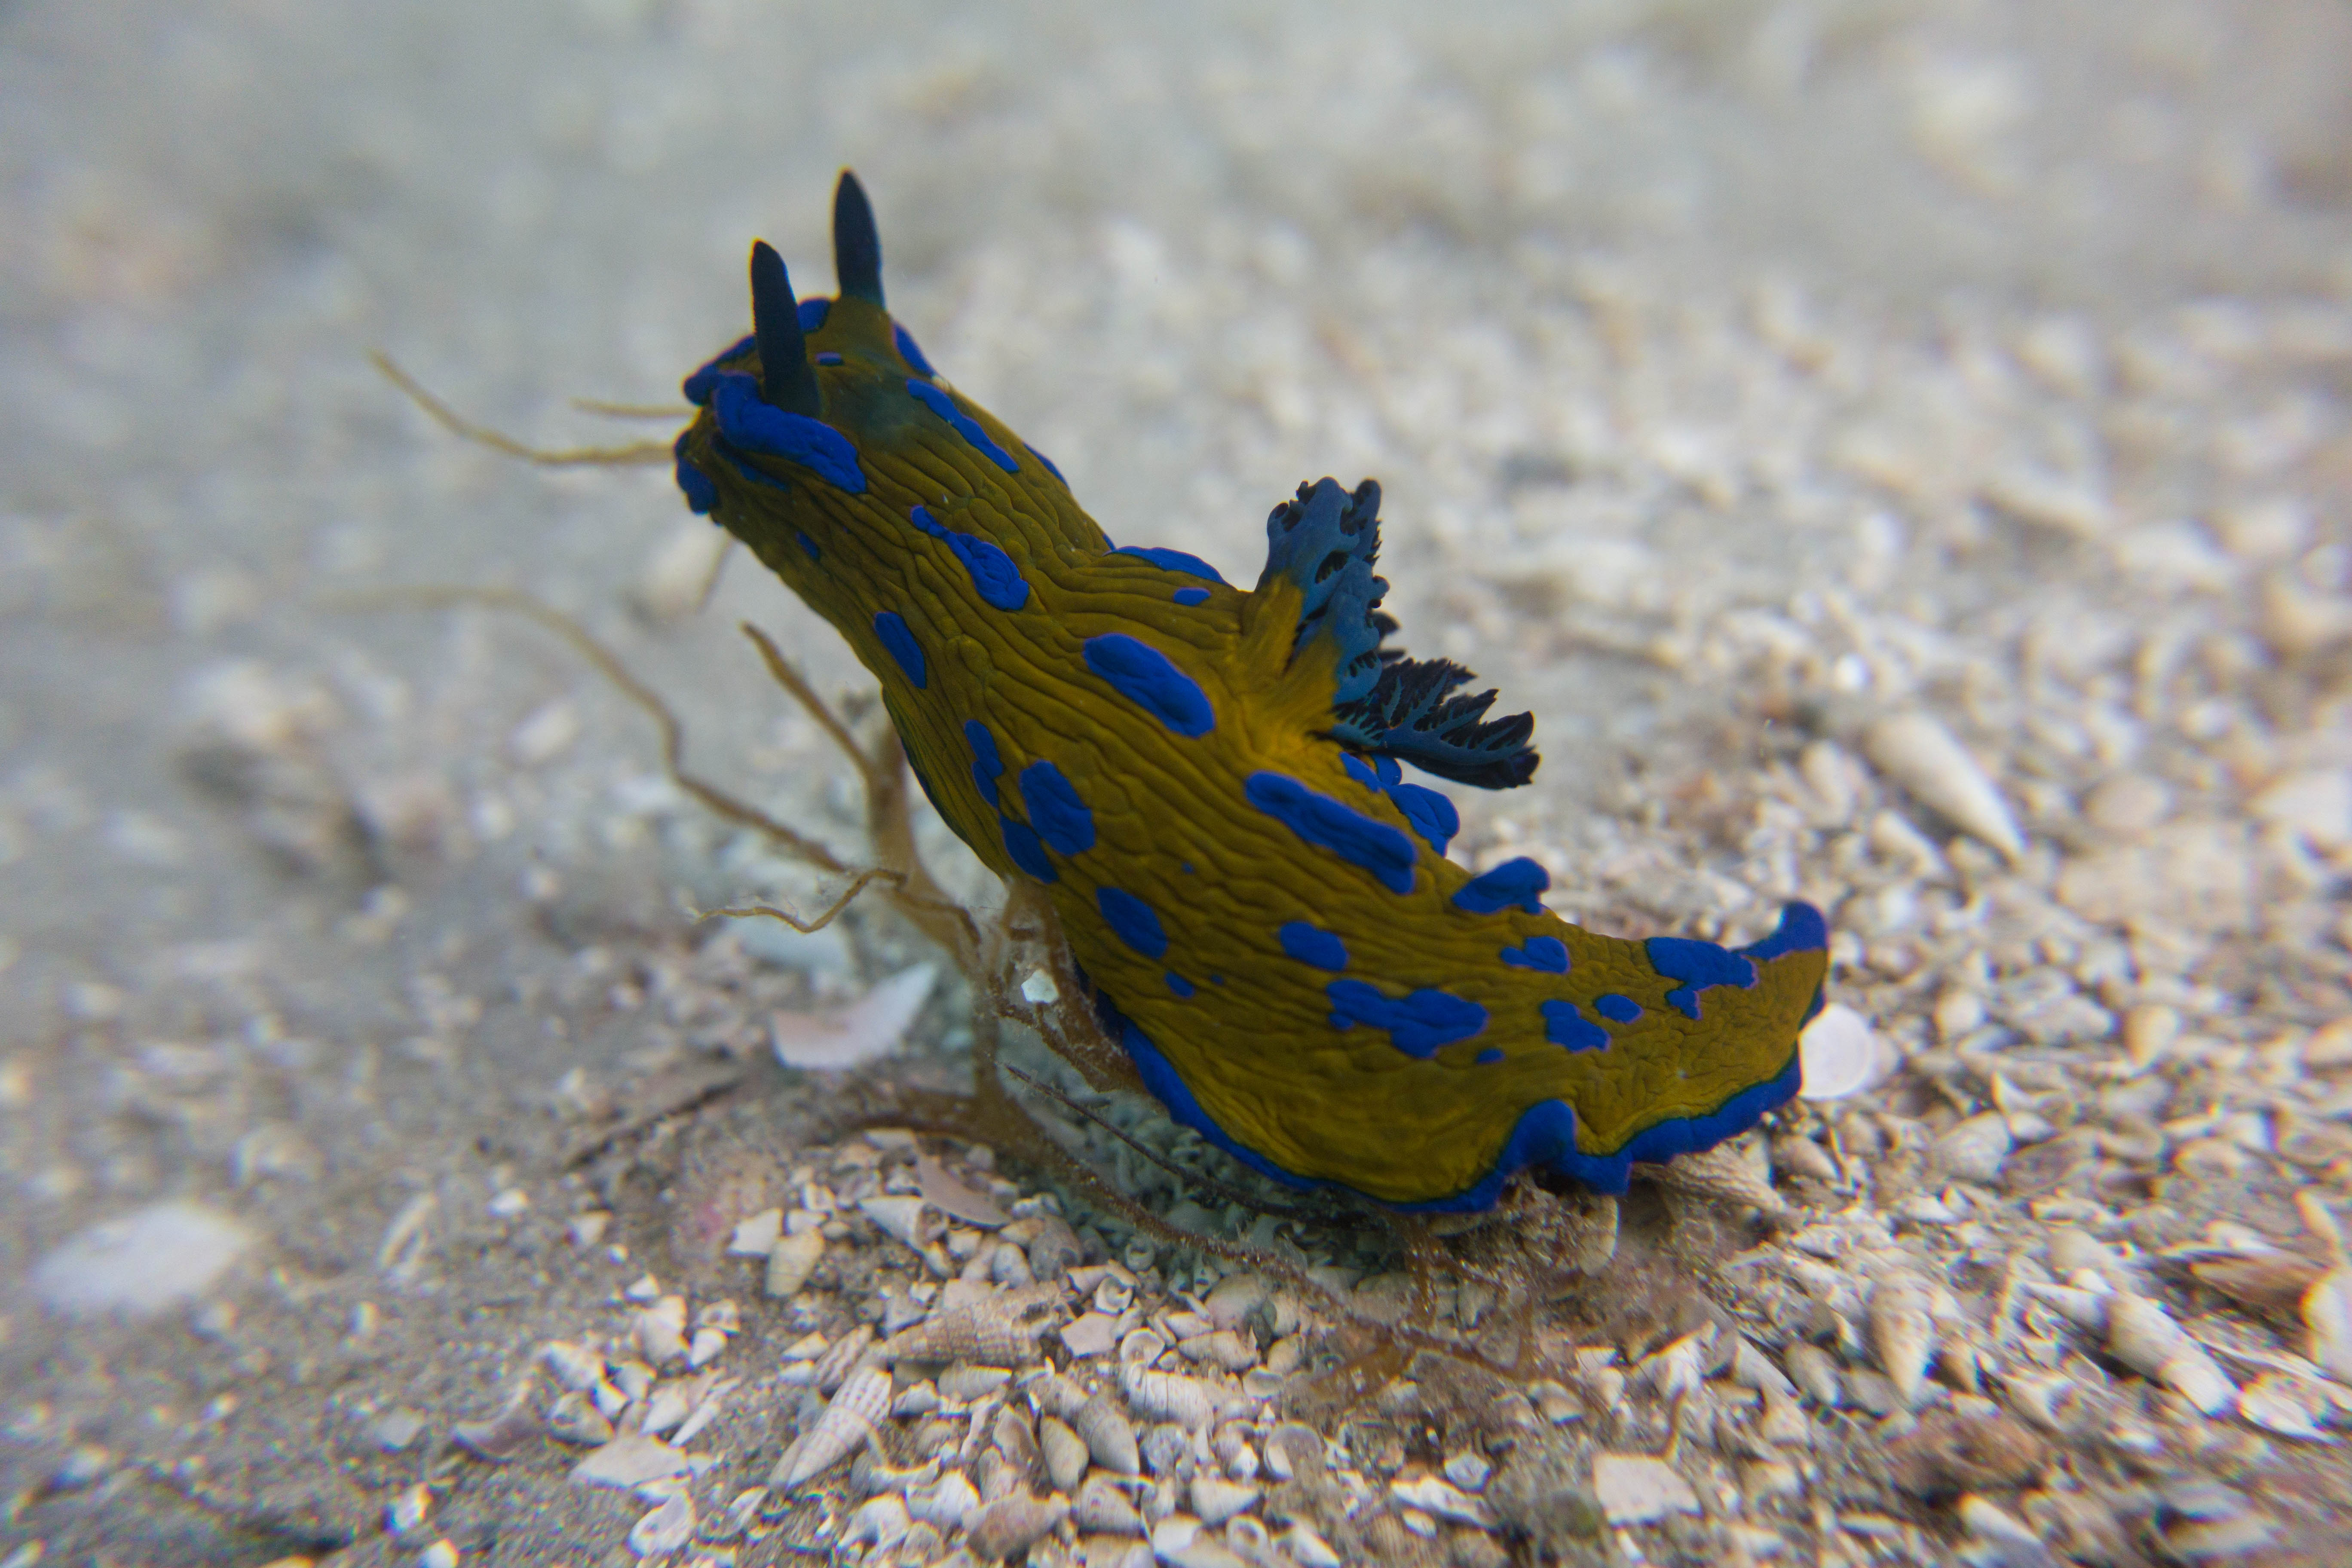 Verco's nudibranch